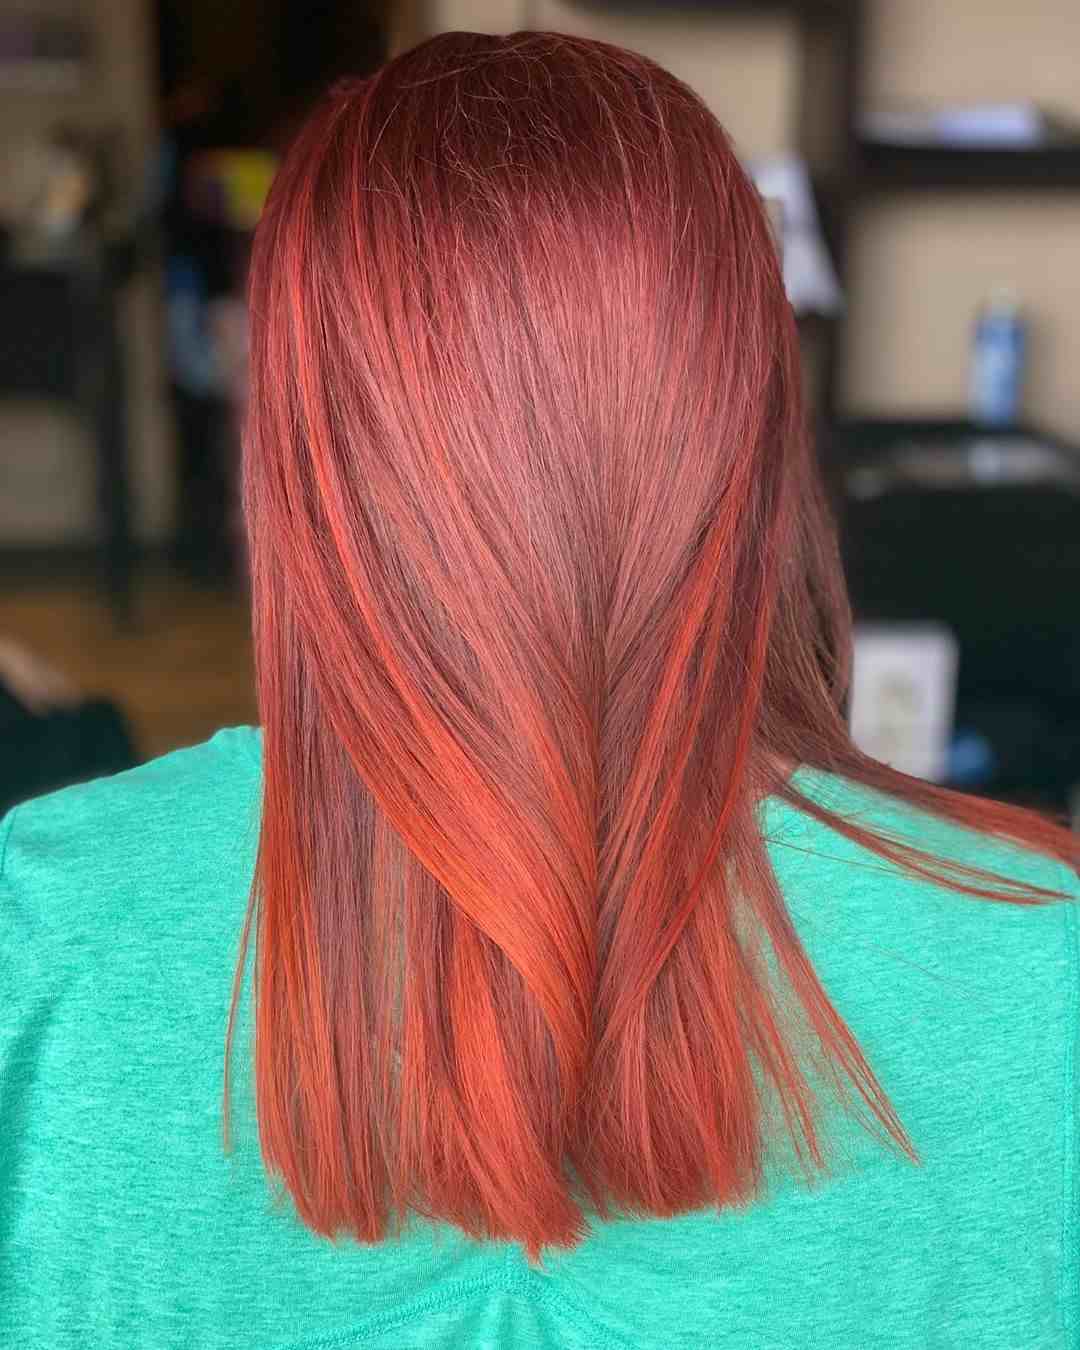 Frauen frisuren rote haare TOP 25+